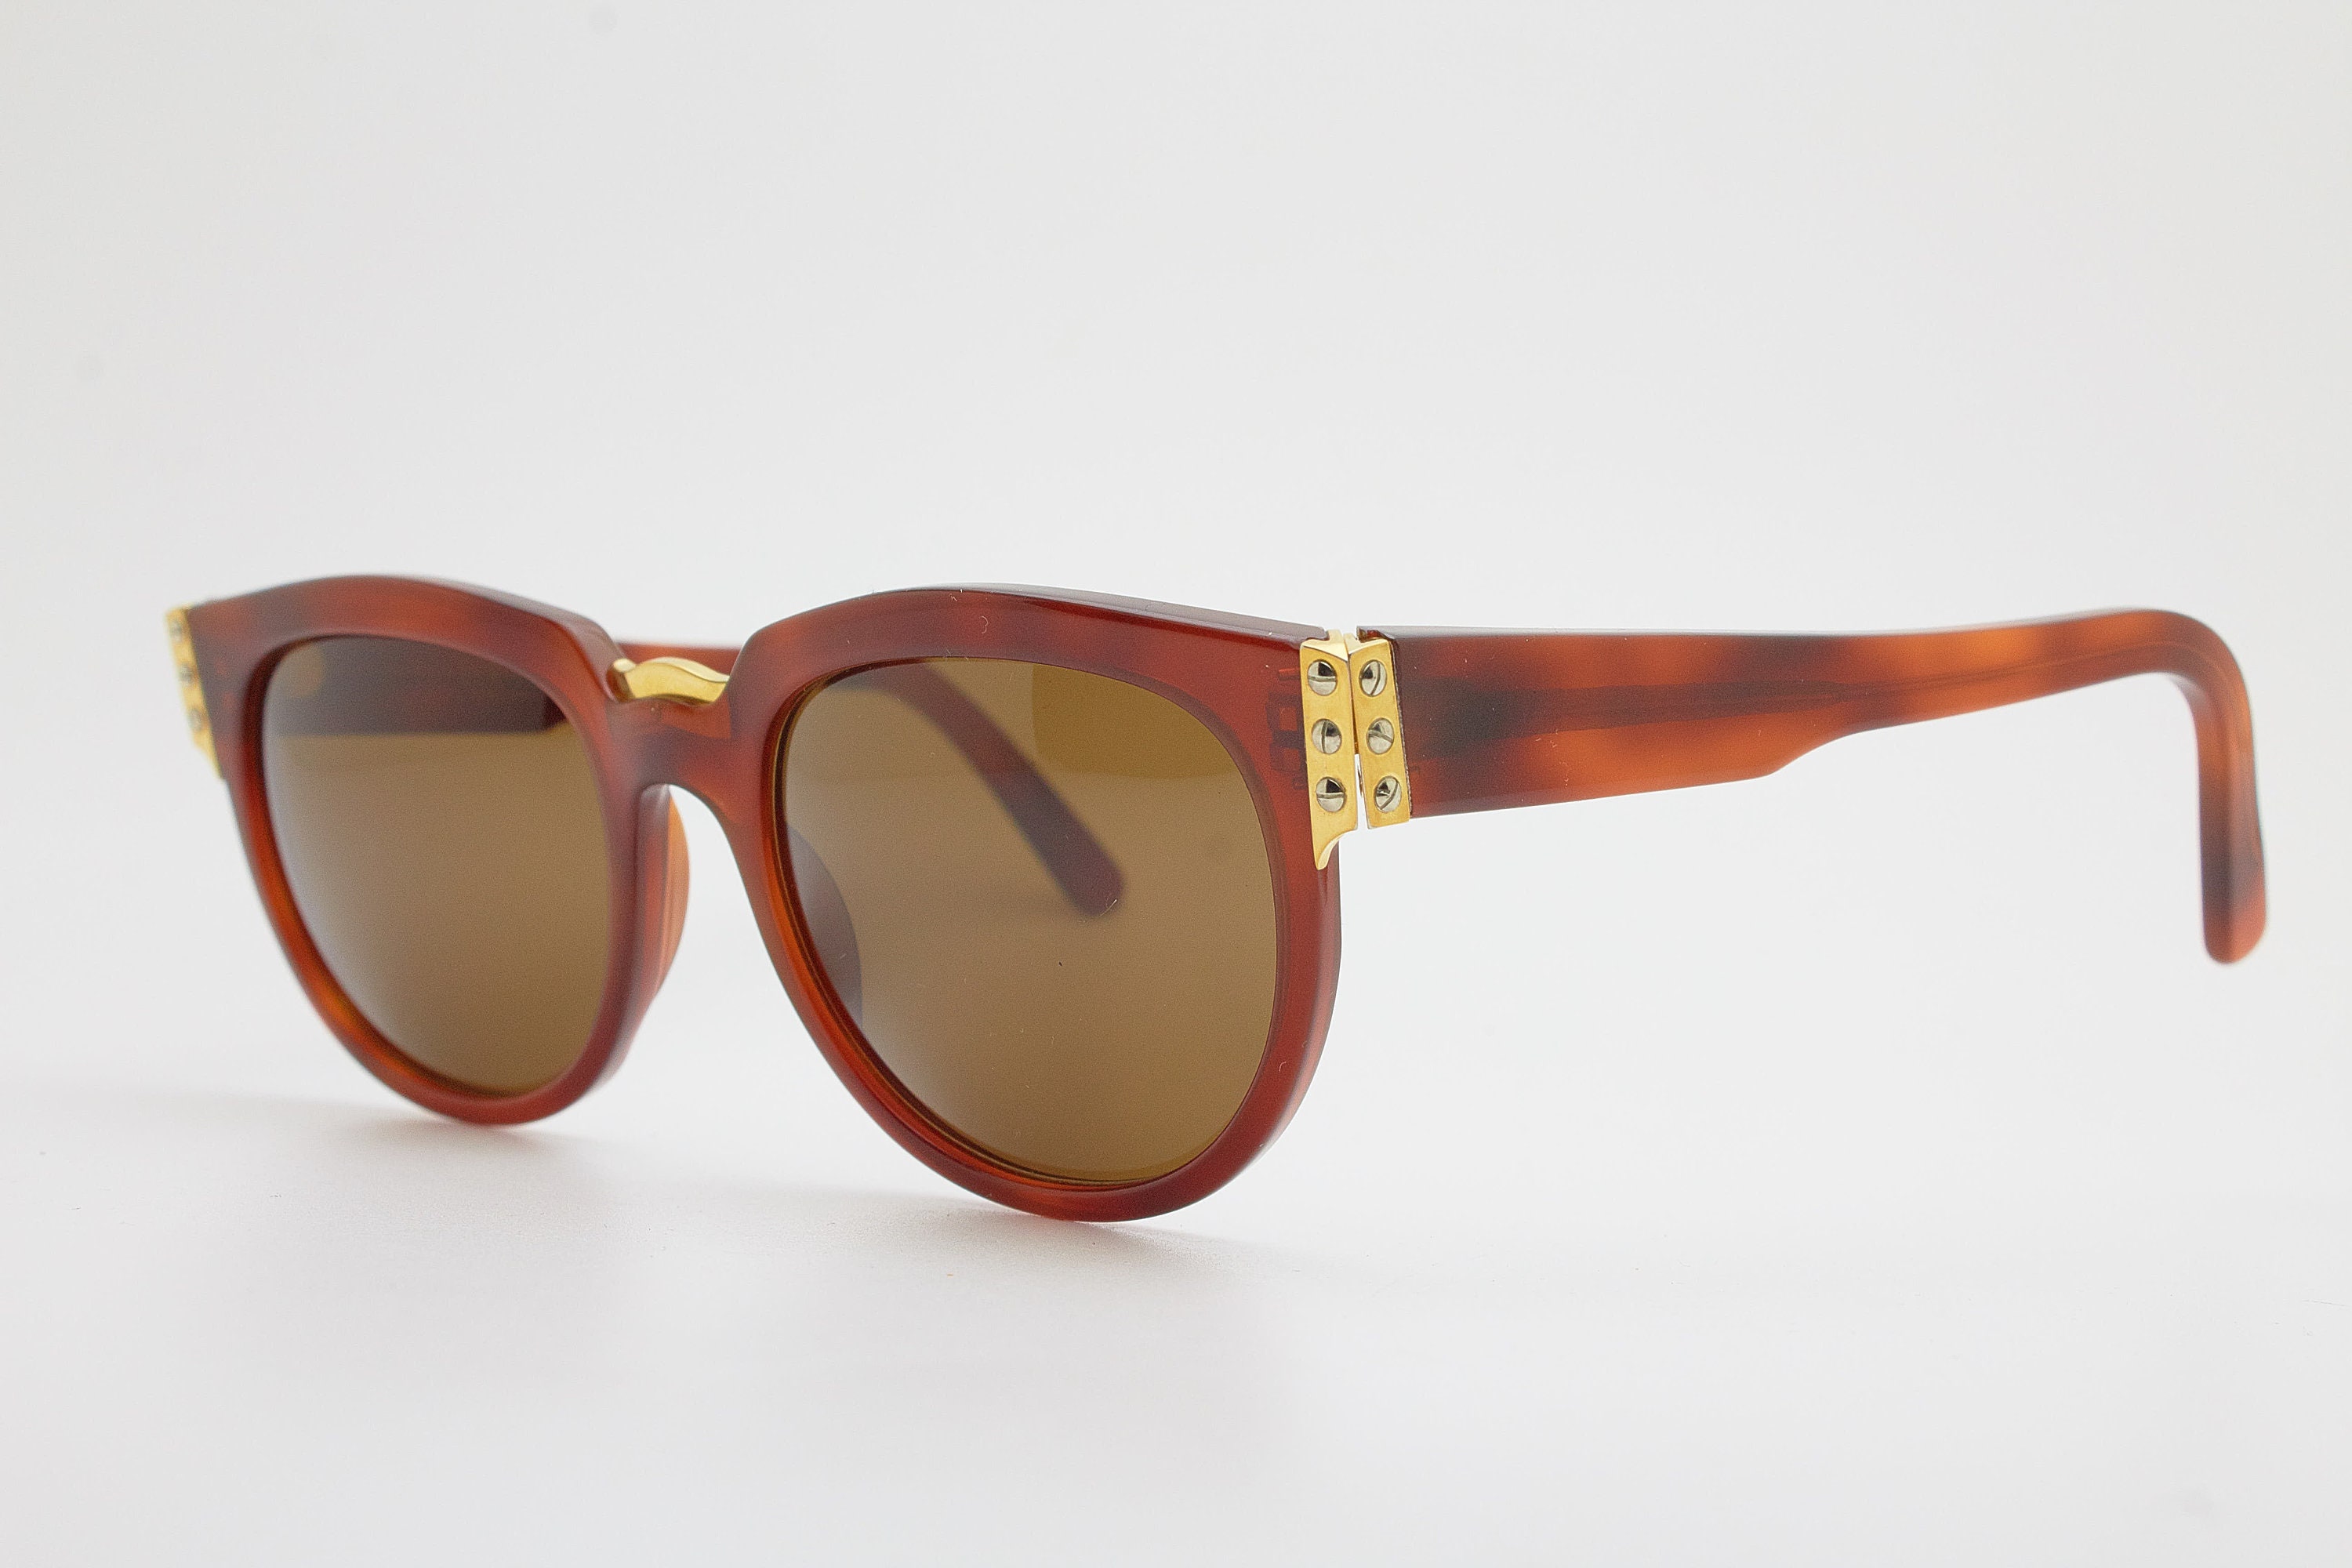 Classic Vintage Sunglasses LOEWE MADRID 1846 Elegente Moda - Etsy